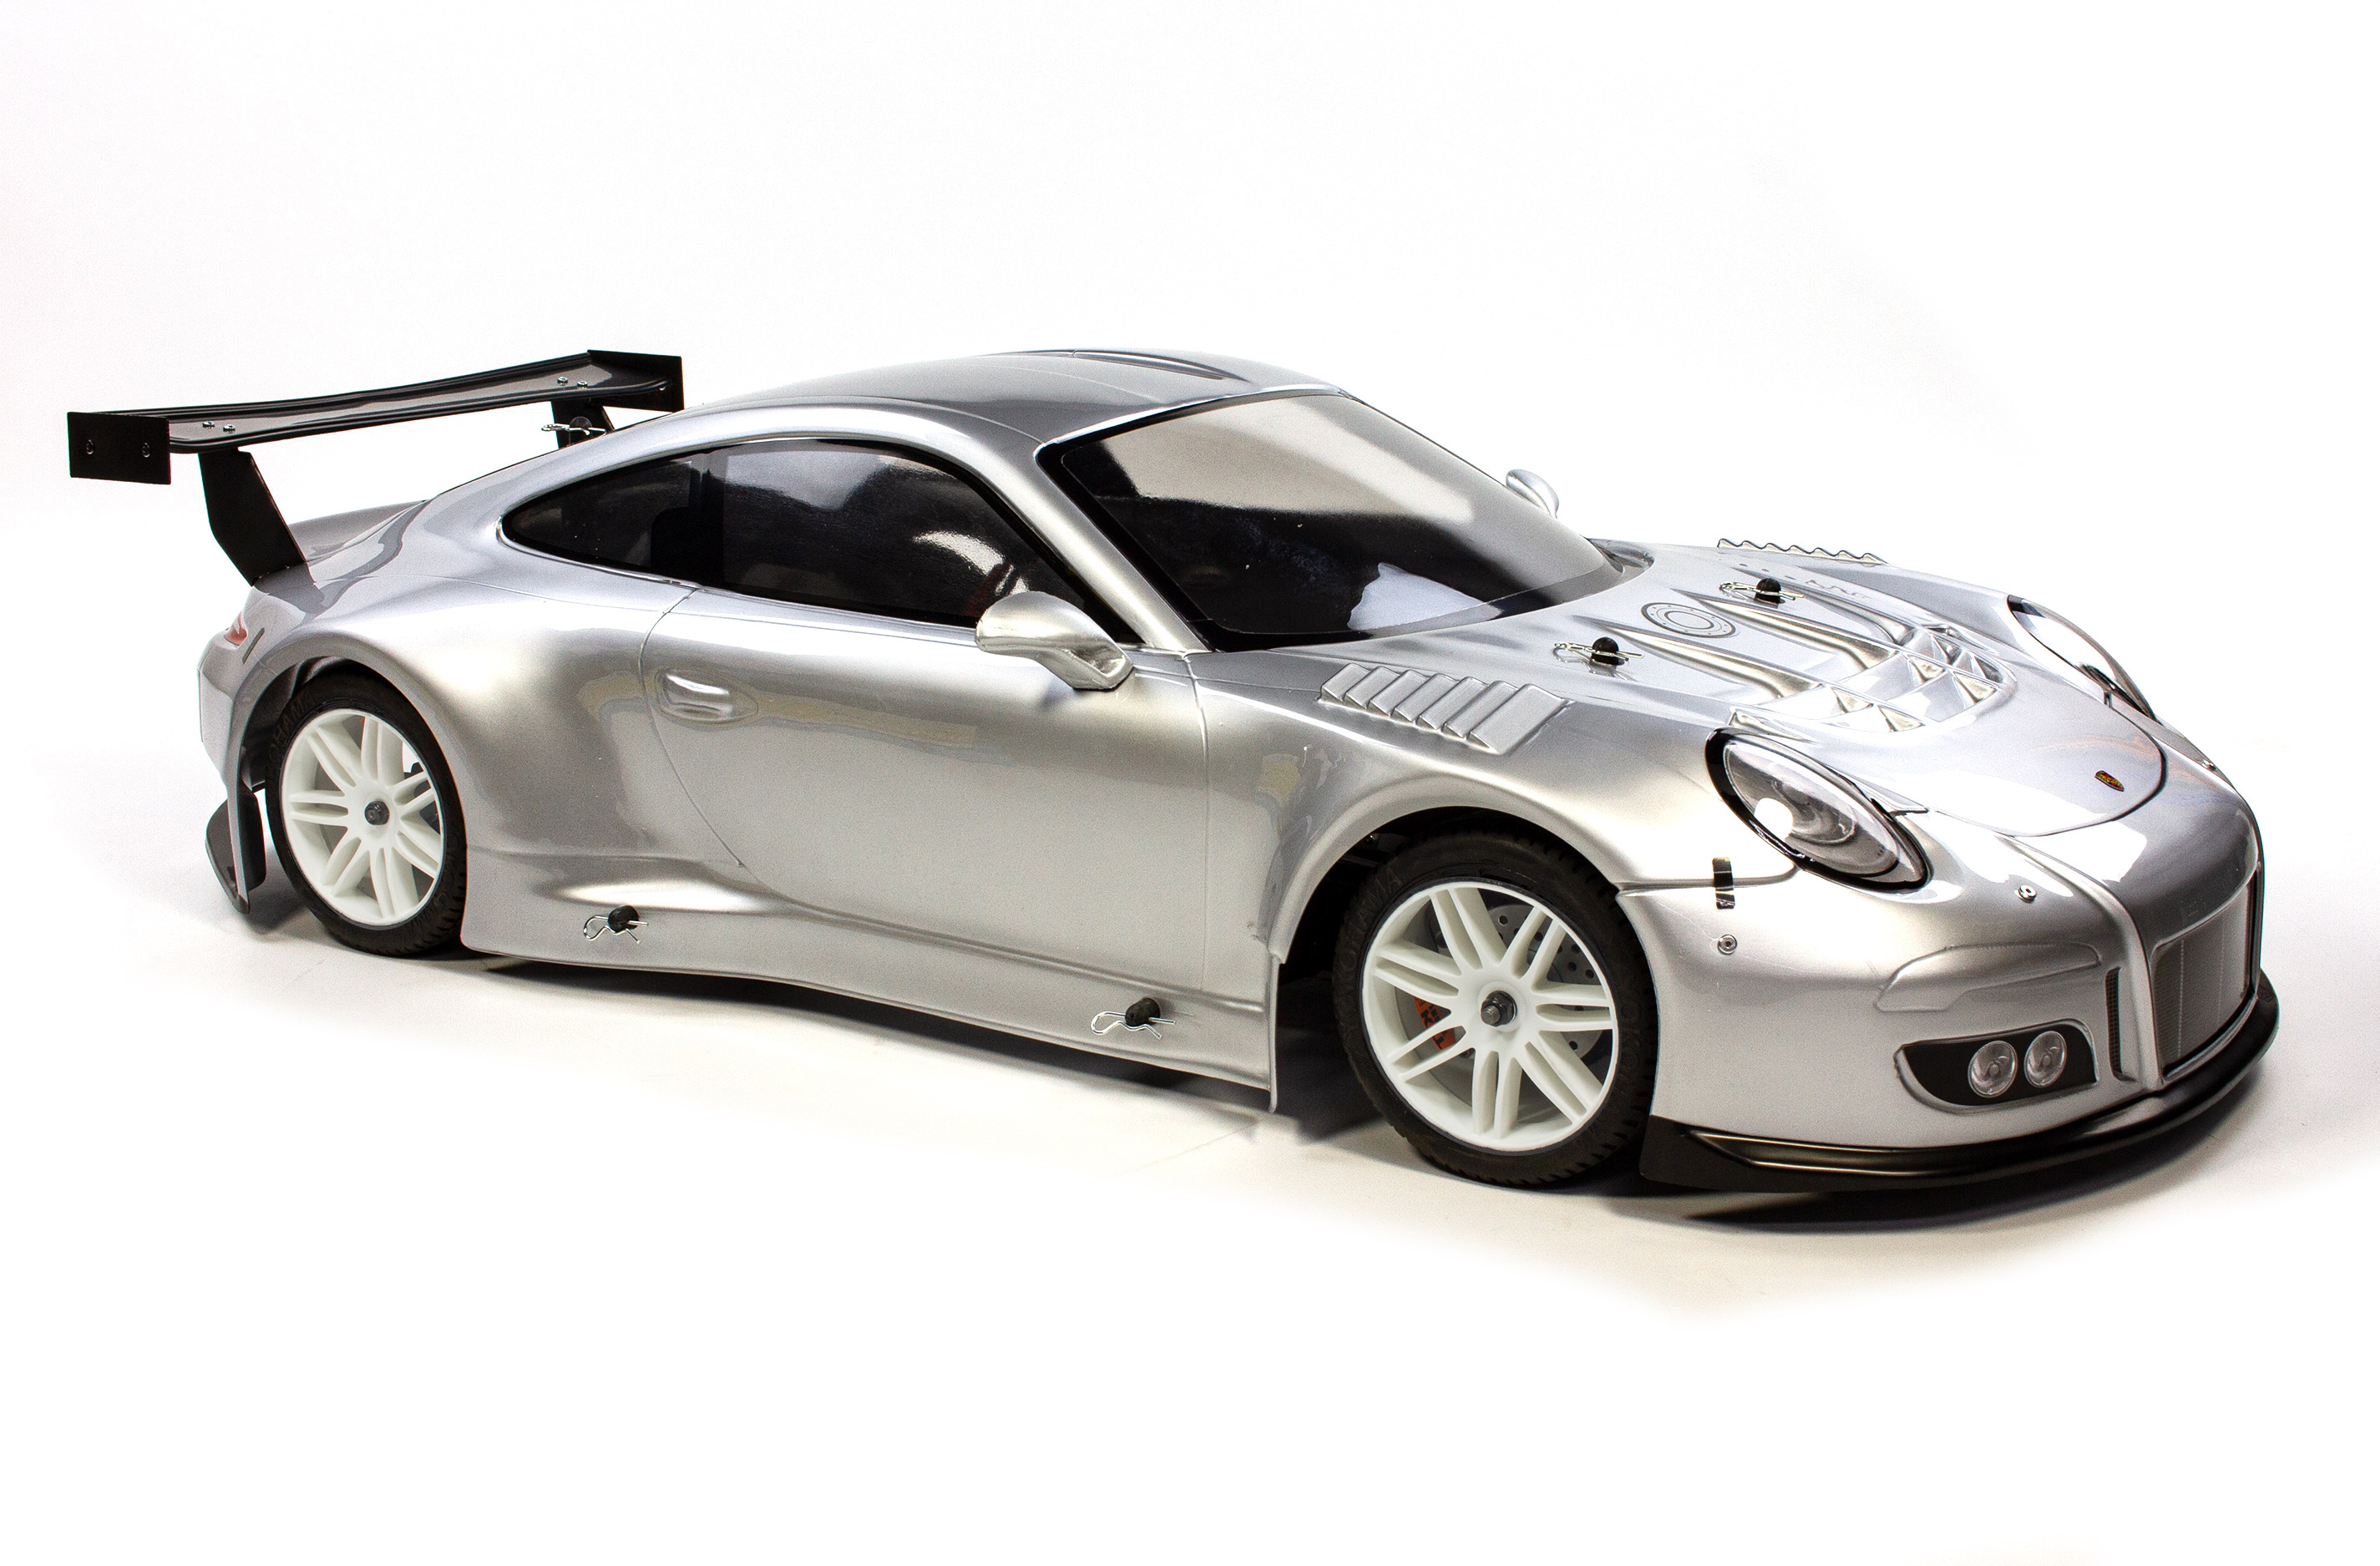 5189 FG Porsche 911 GT3R  body shell, Wheelbase 530 mm, painted